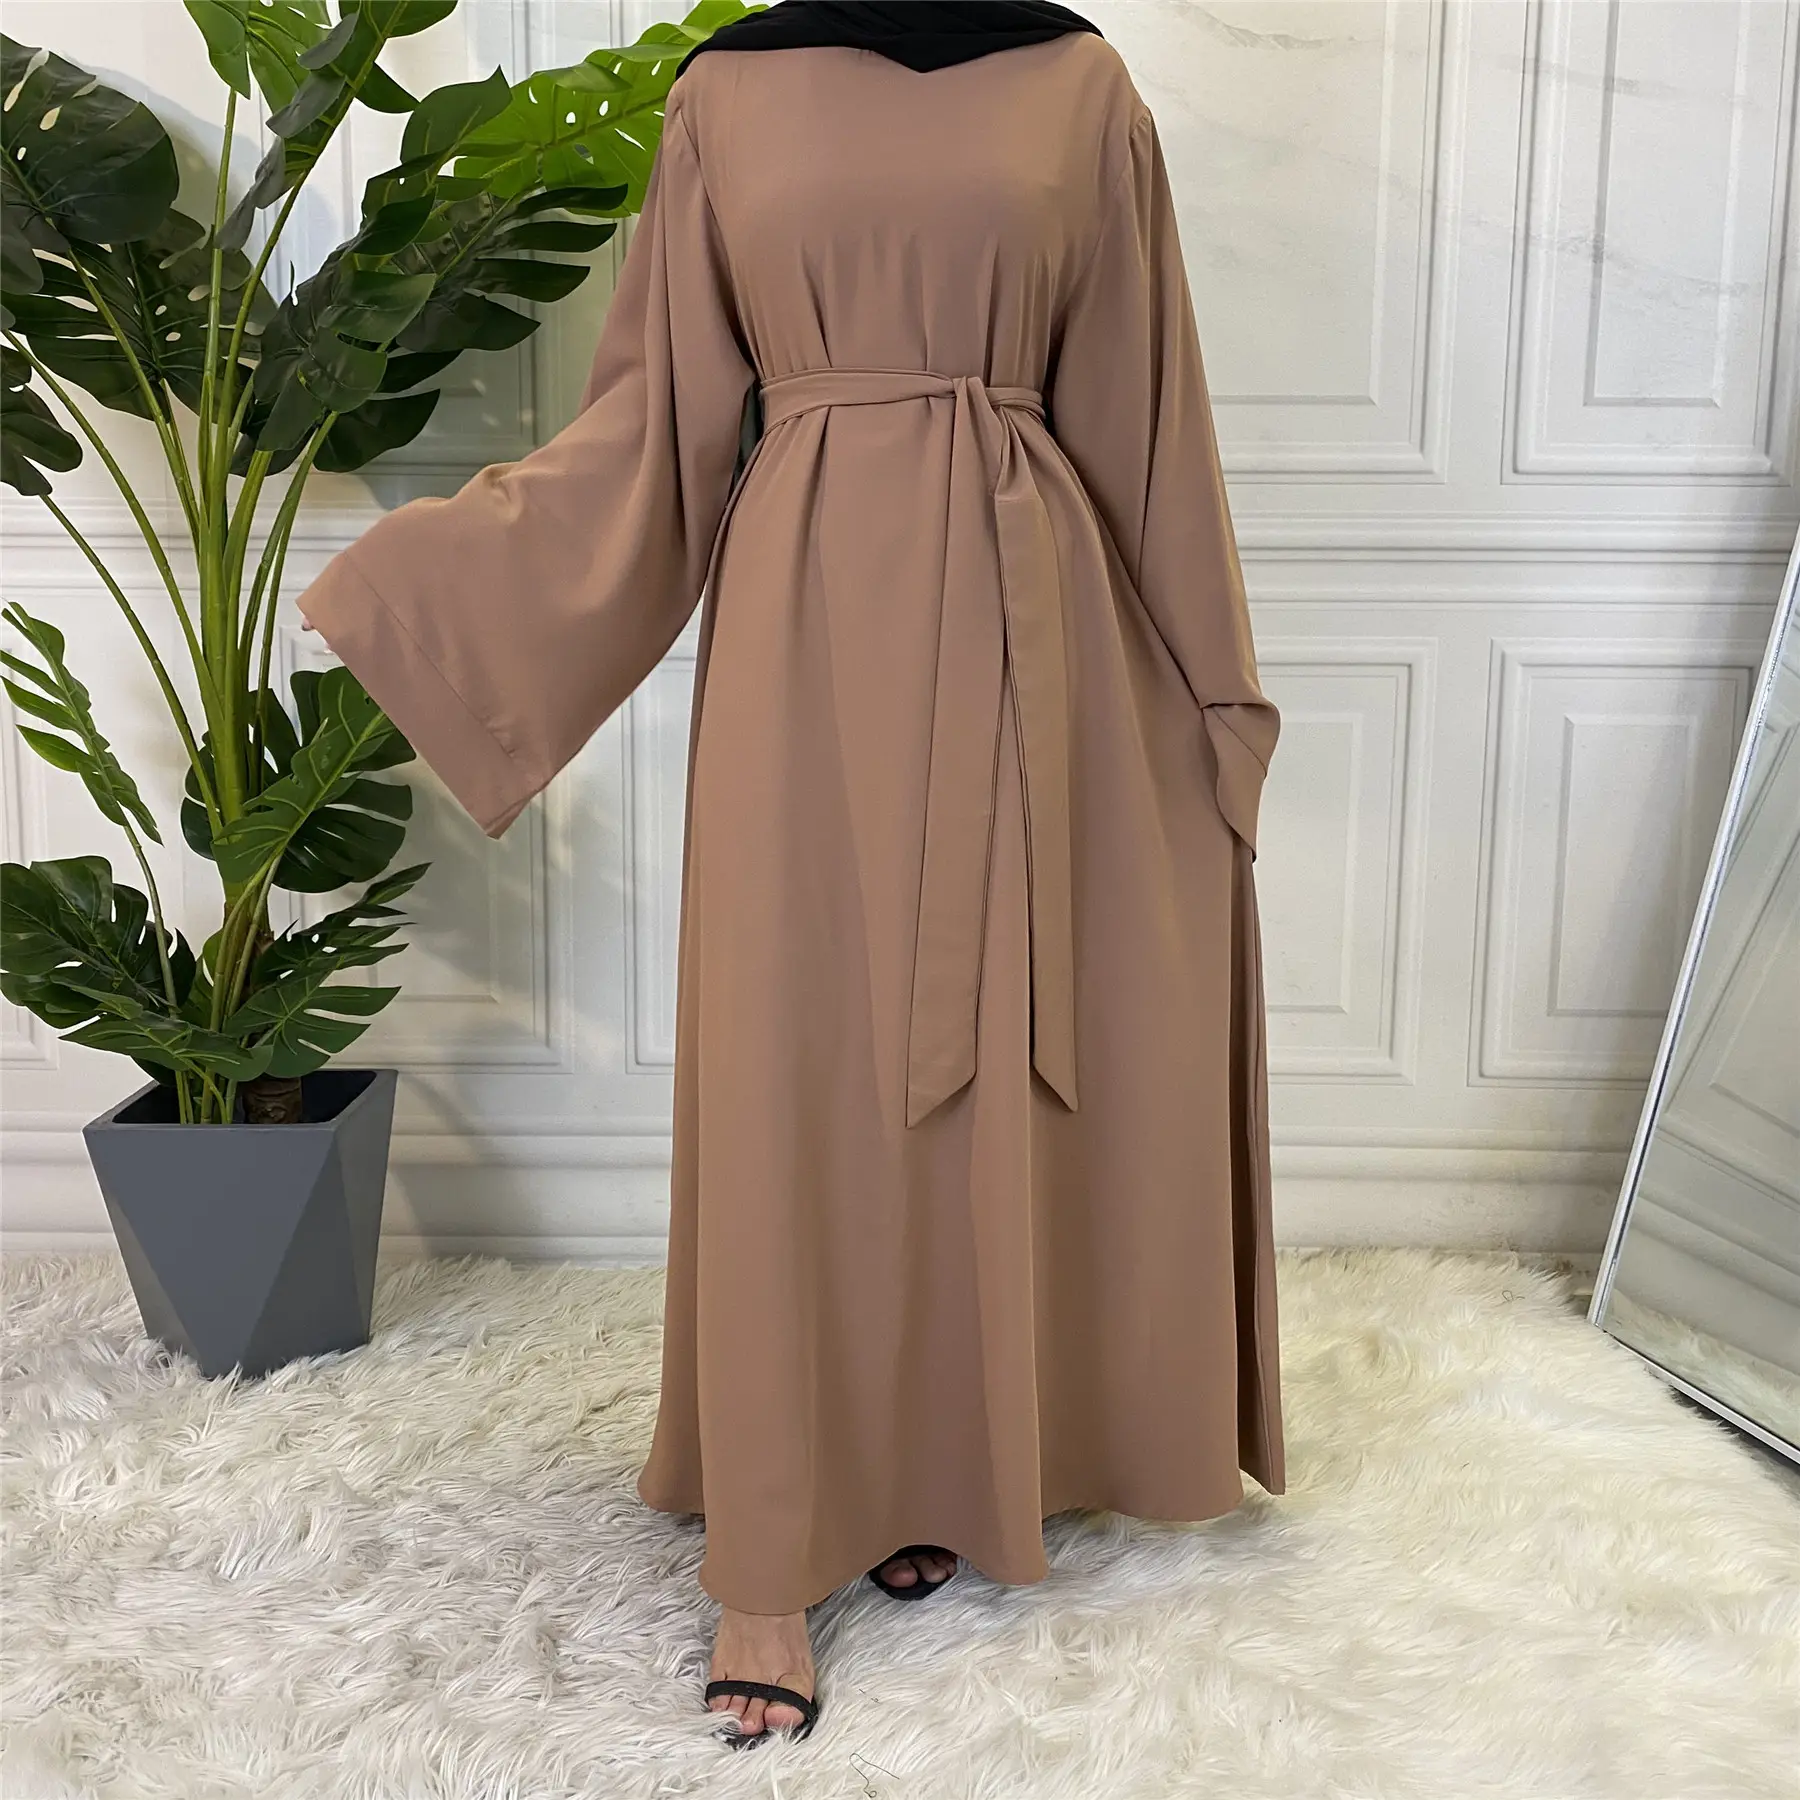 Große Größe gedruckt Kaftan lange lässige Ärmel Plus Size Abaya Jilbab Maxi muslimische Kleider für Frauen Dame